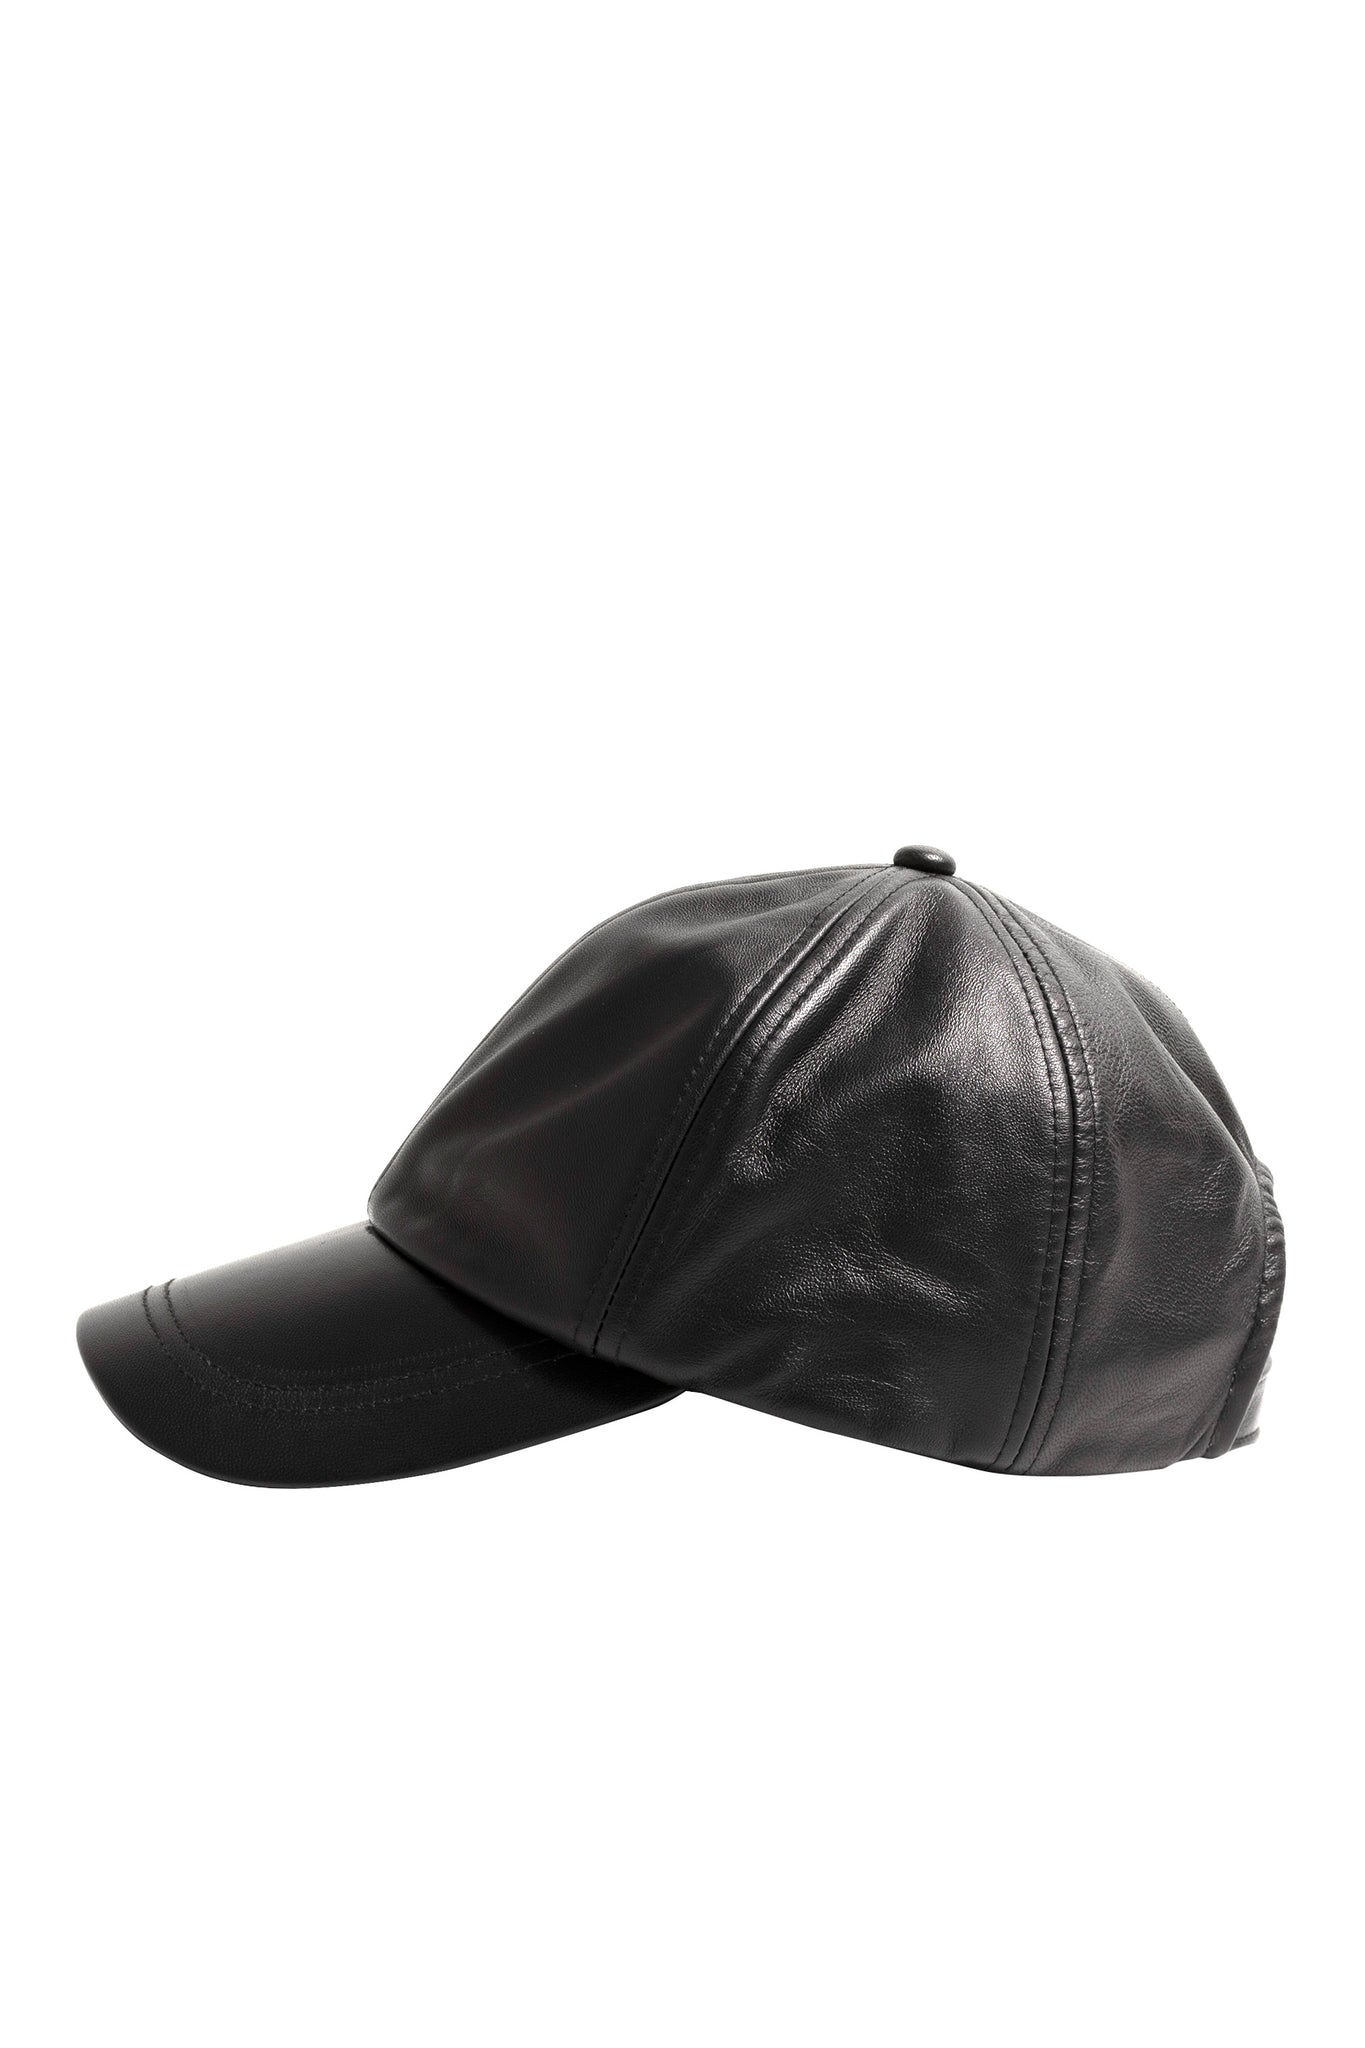 LEATHER CAP / BLACK